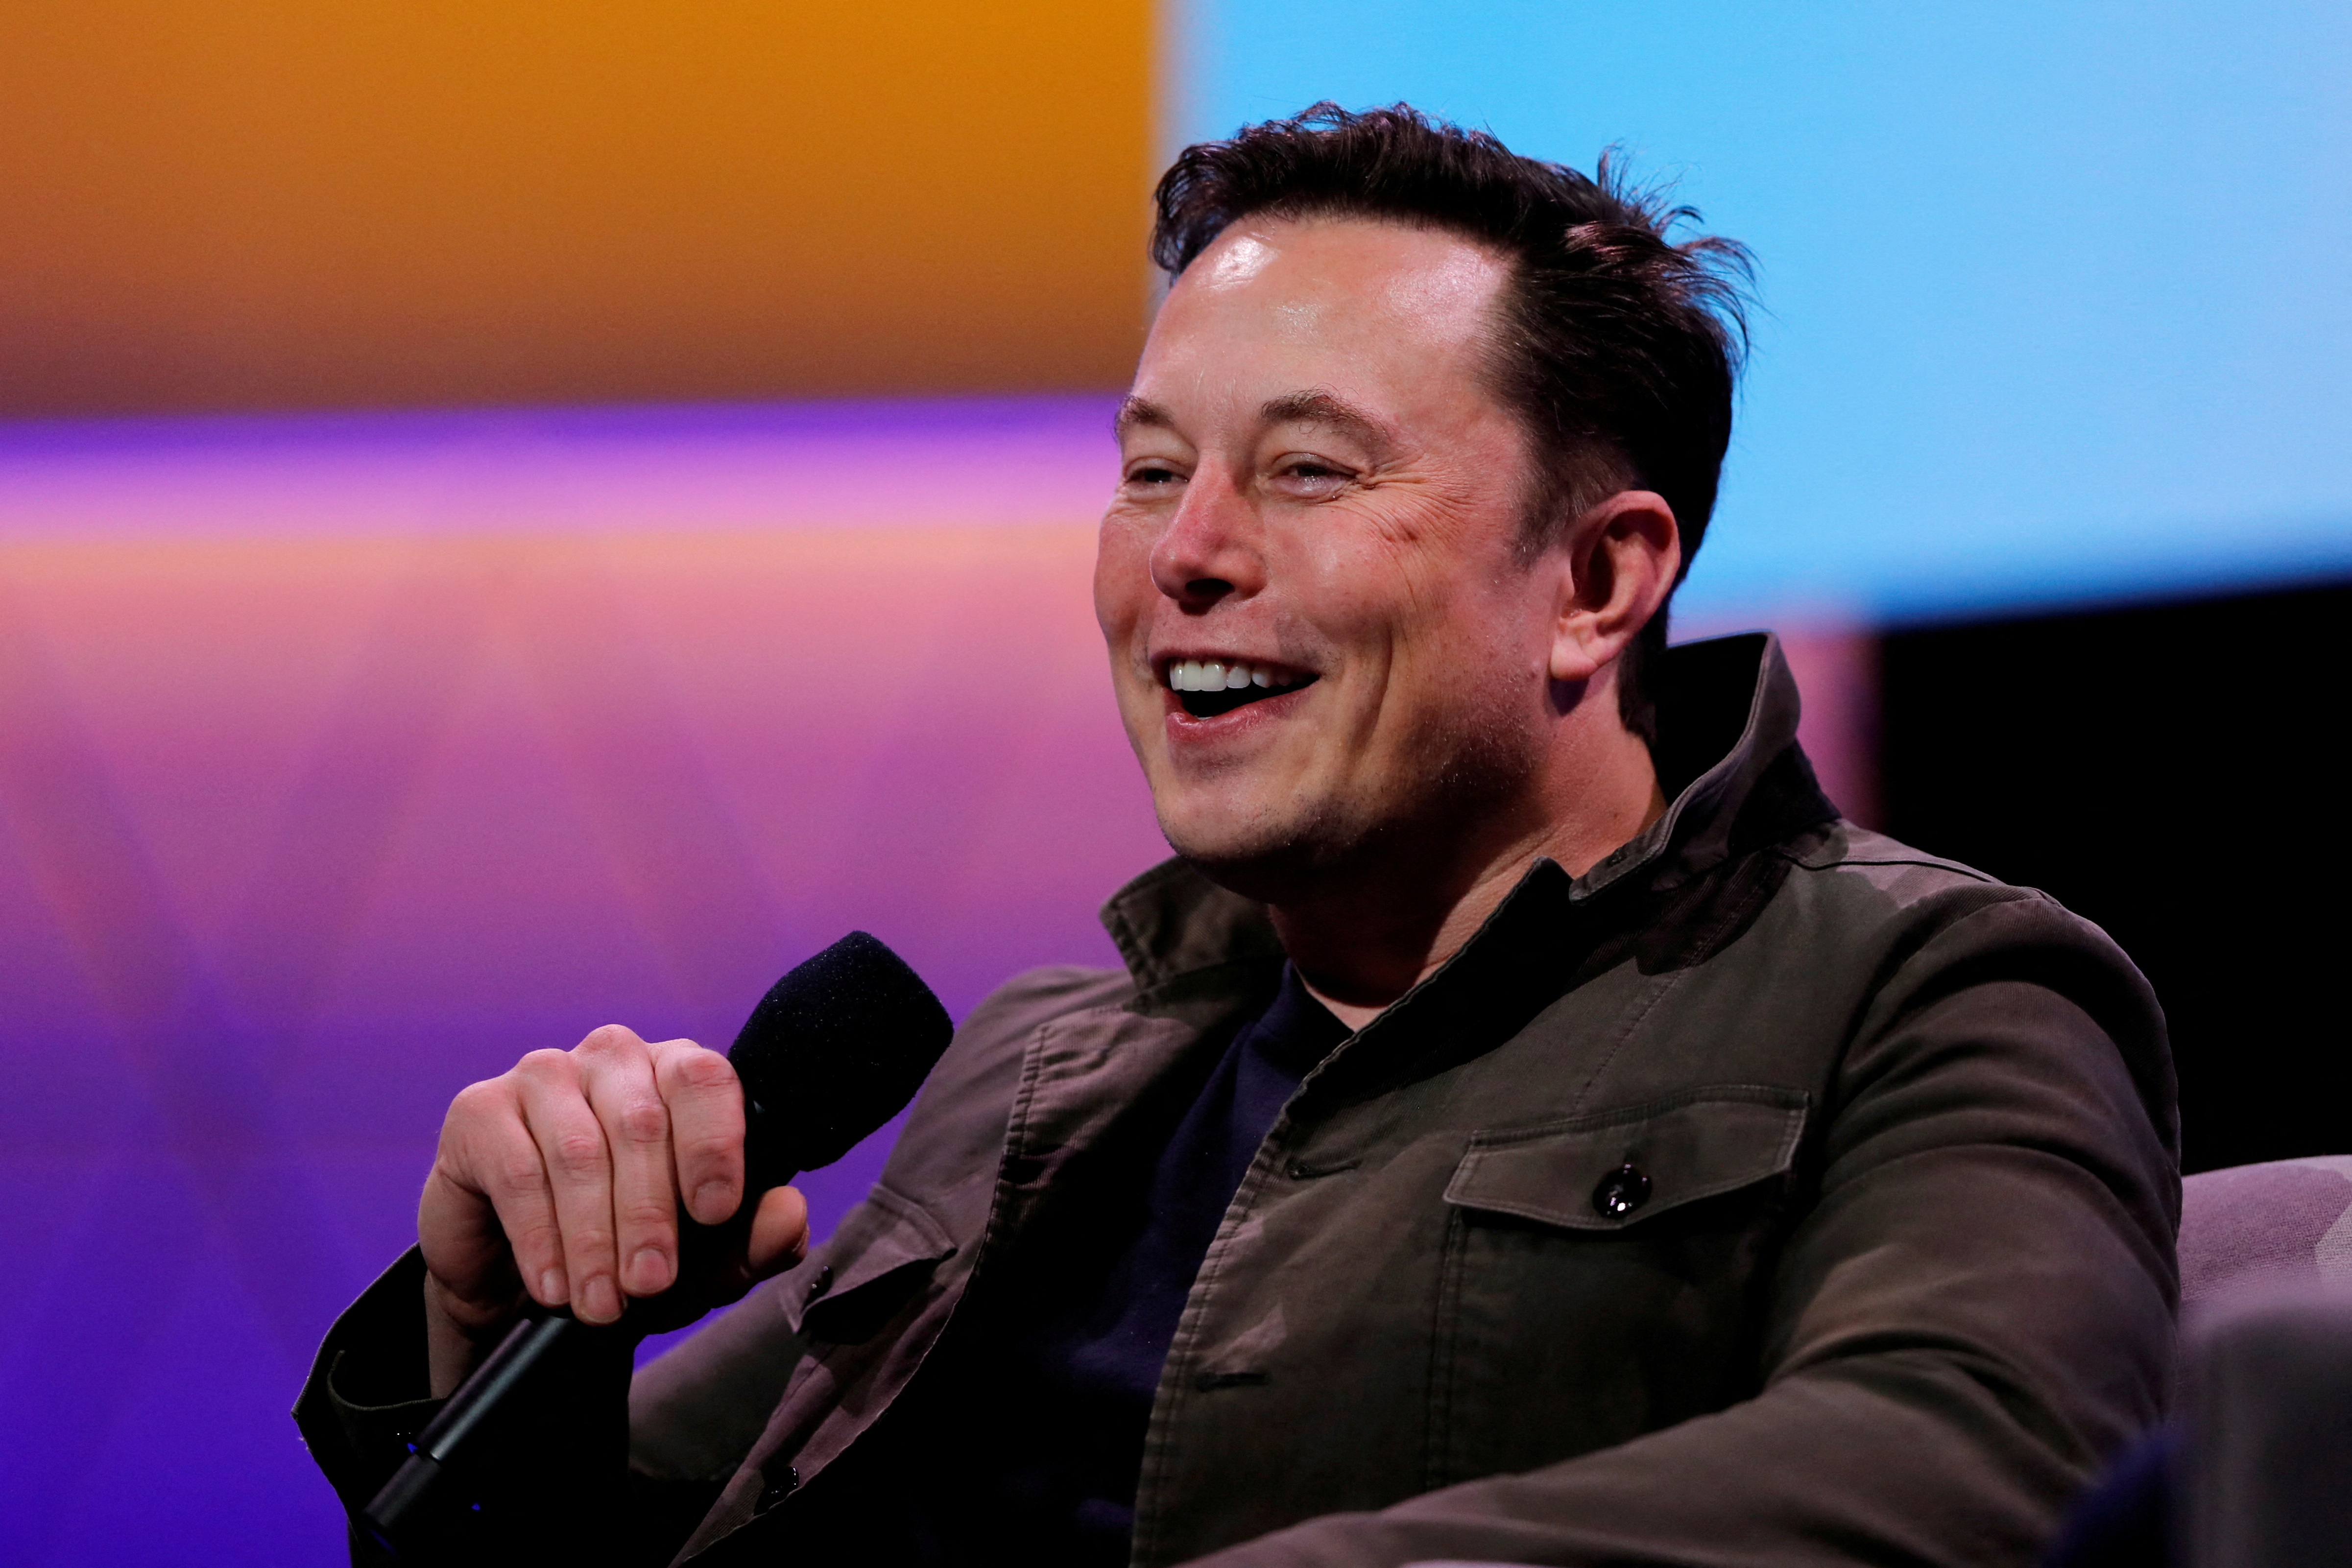 Musk ha atraído el foco mediático no solo por sus actividades empresariales a la cabeza de Tesla o la compañía aeroespacial SpaceX, si no también por sus extravagantes mensajes en las redes sociales